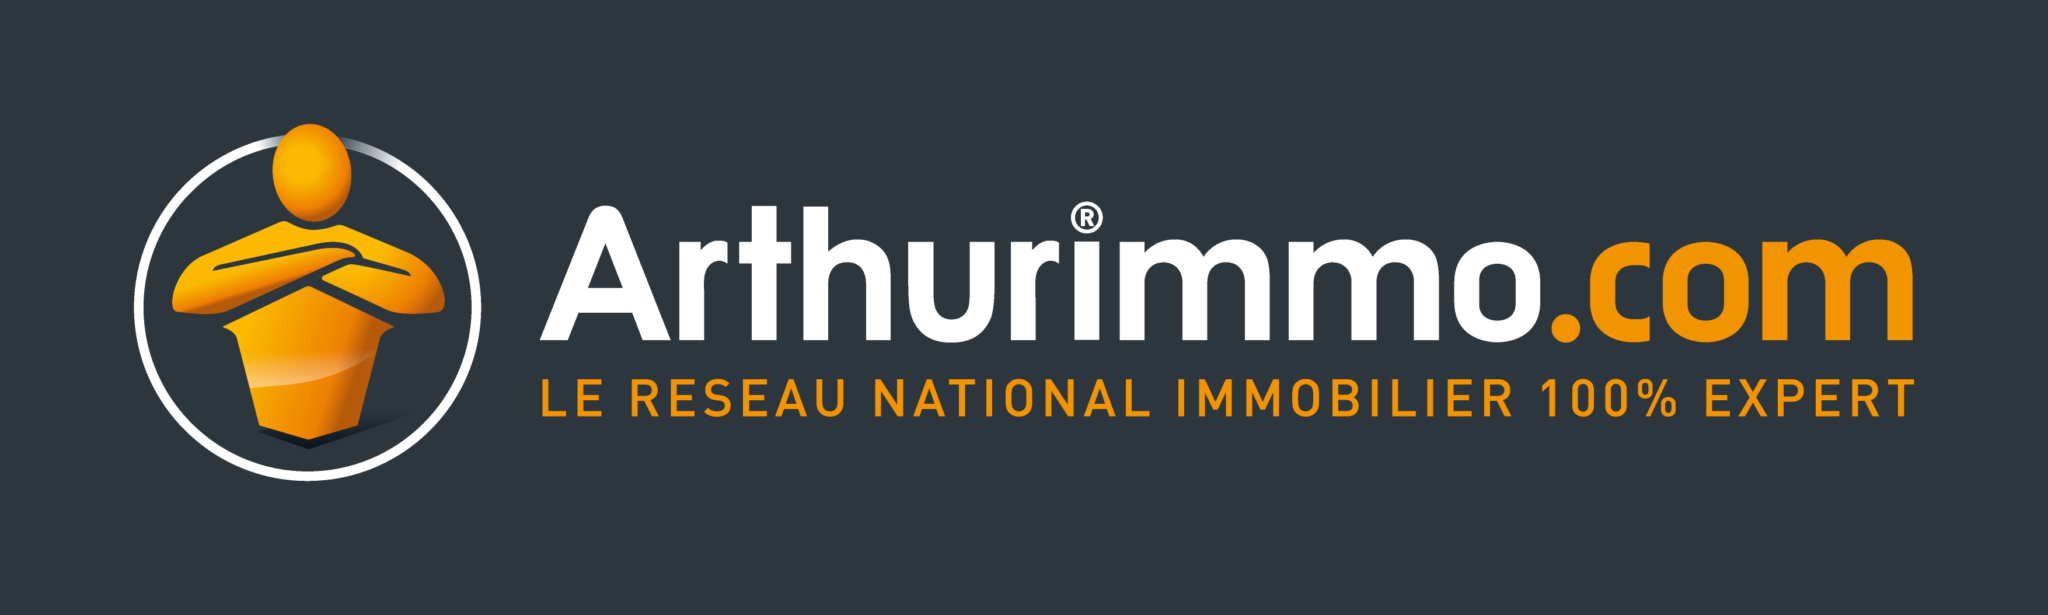 logo ARTHURIMMO.COM